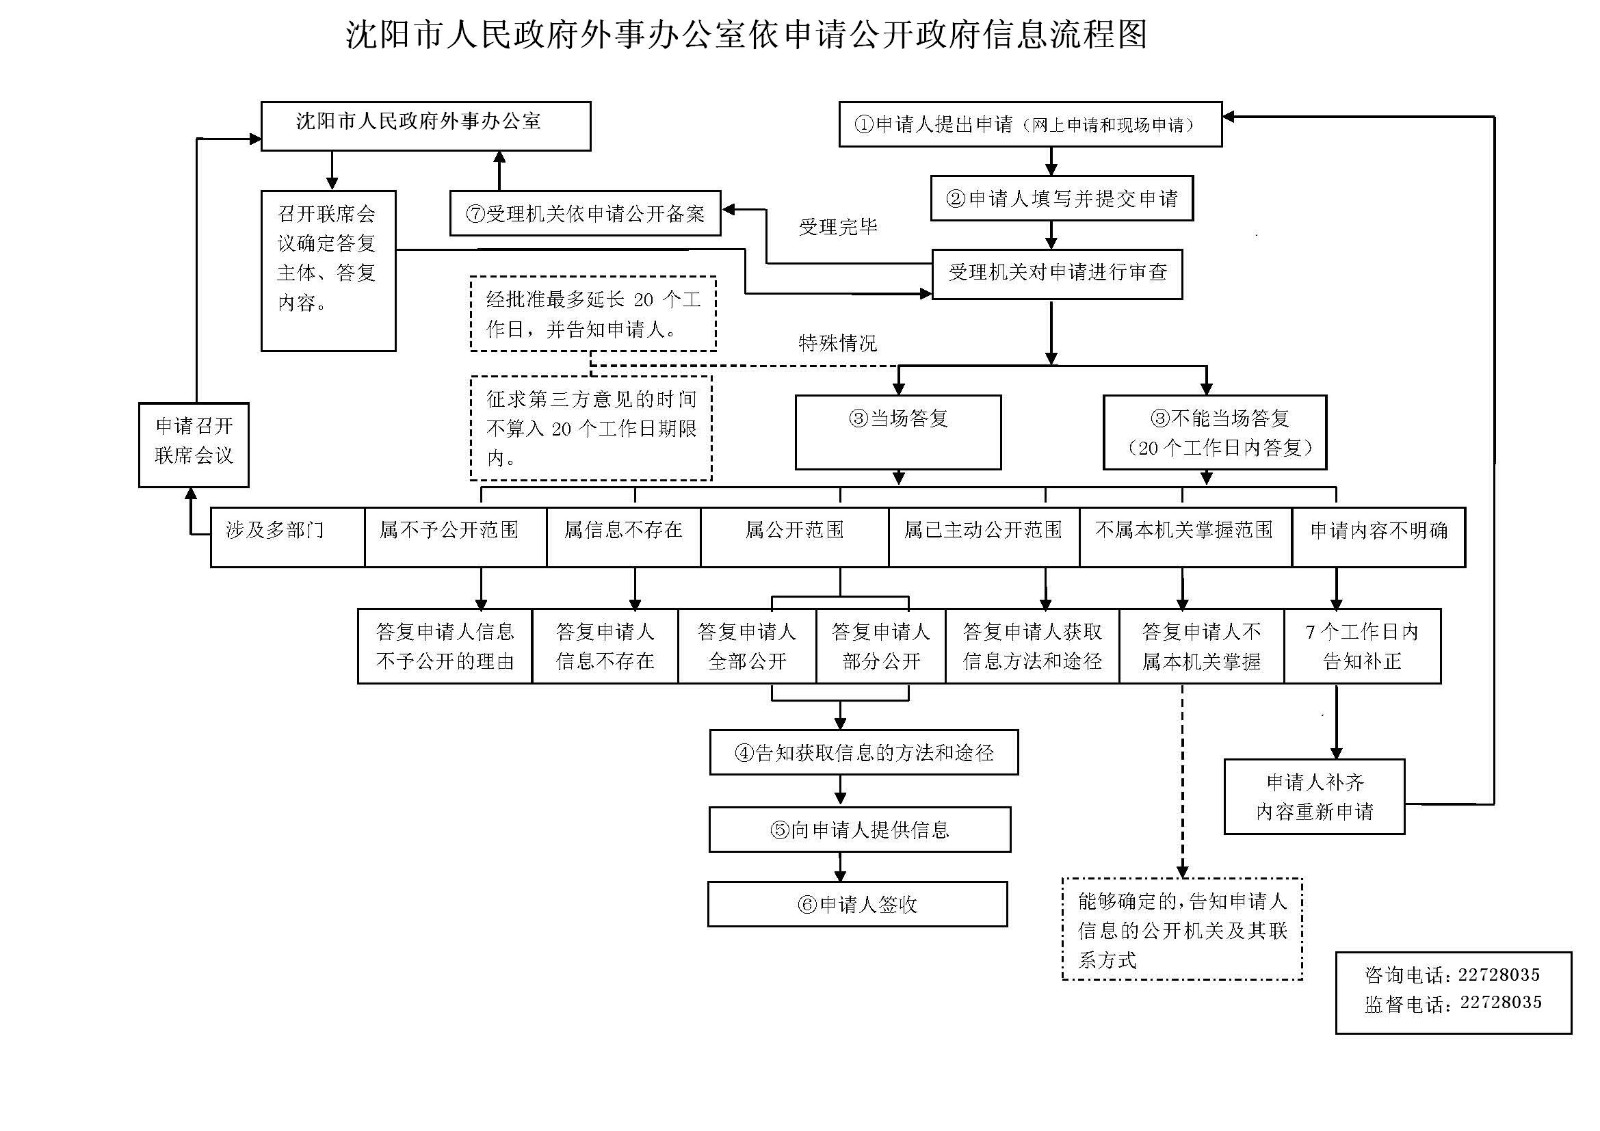 沈阳市人民政府外事办公室依申请公开政府信息流程图.jpg